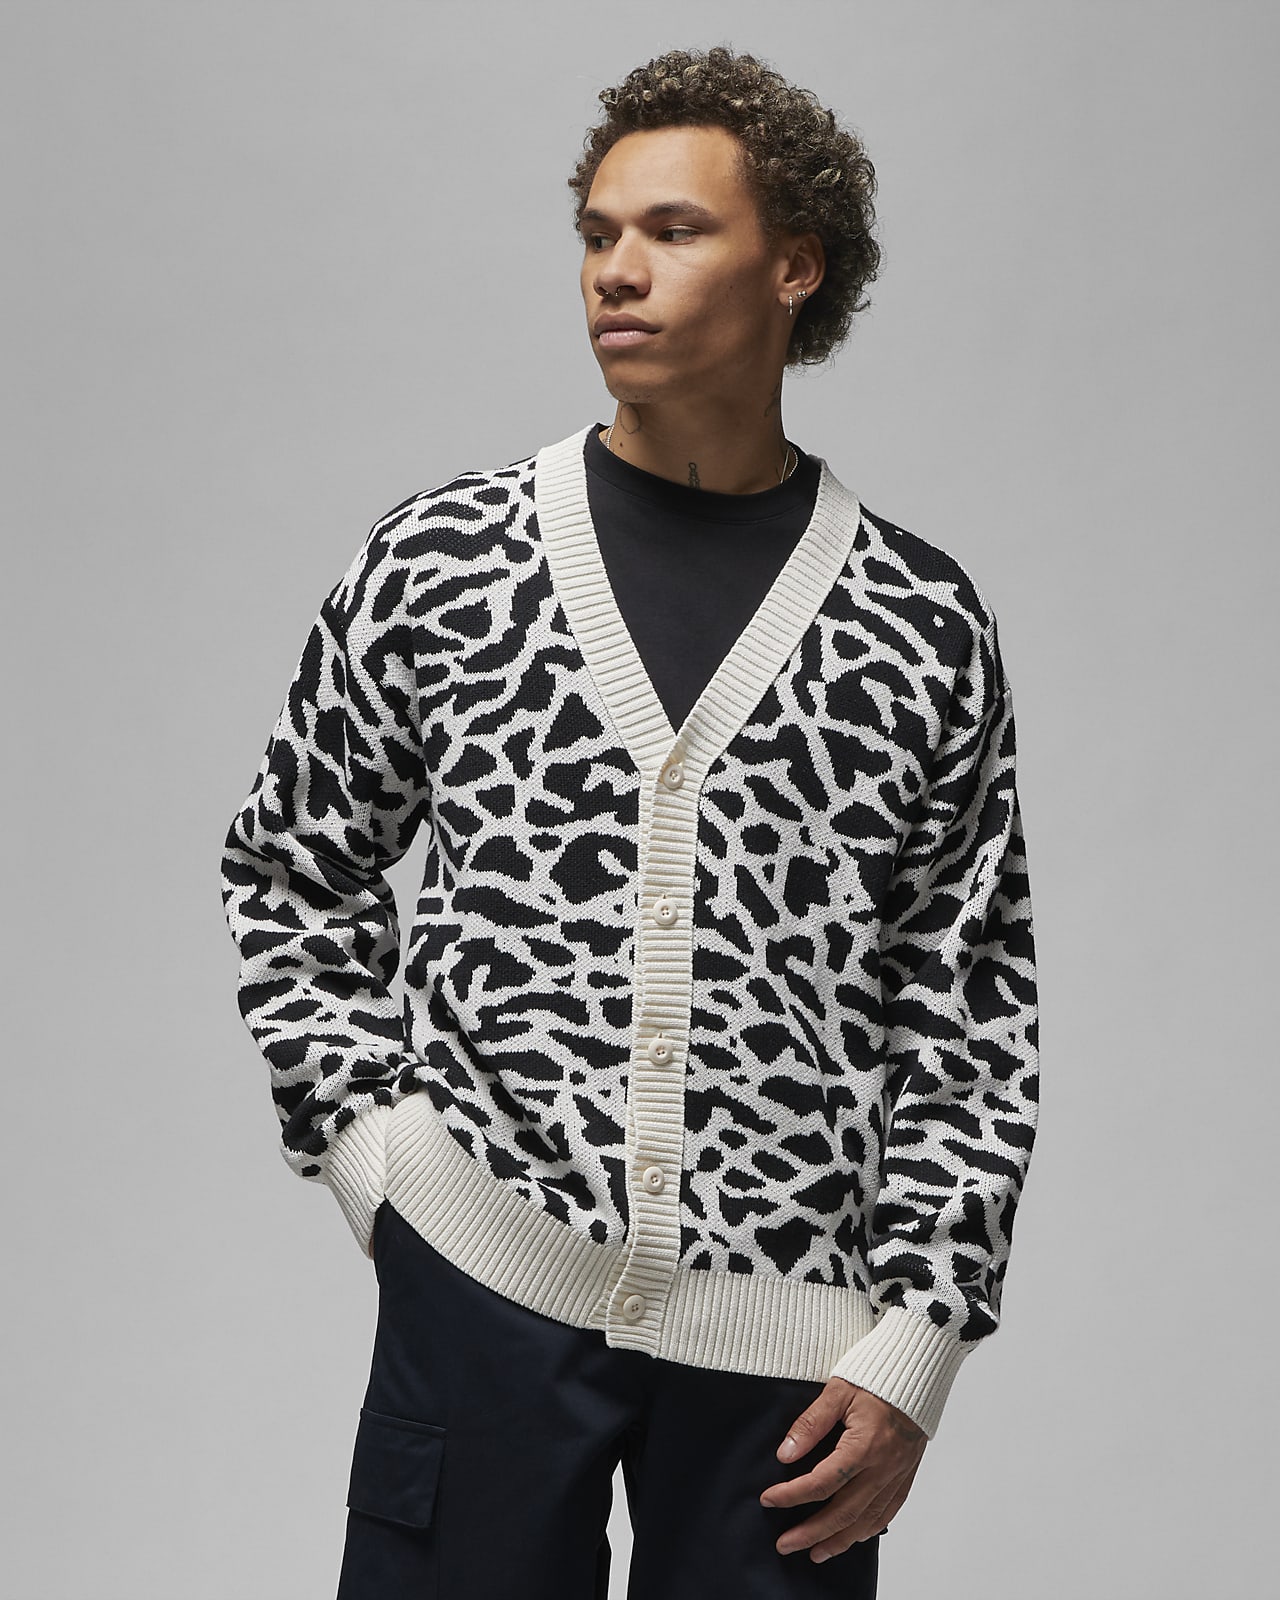 Louis Vuitton Cheetah Hat Denmark, SAVE 30% 